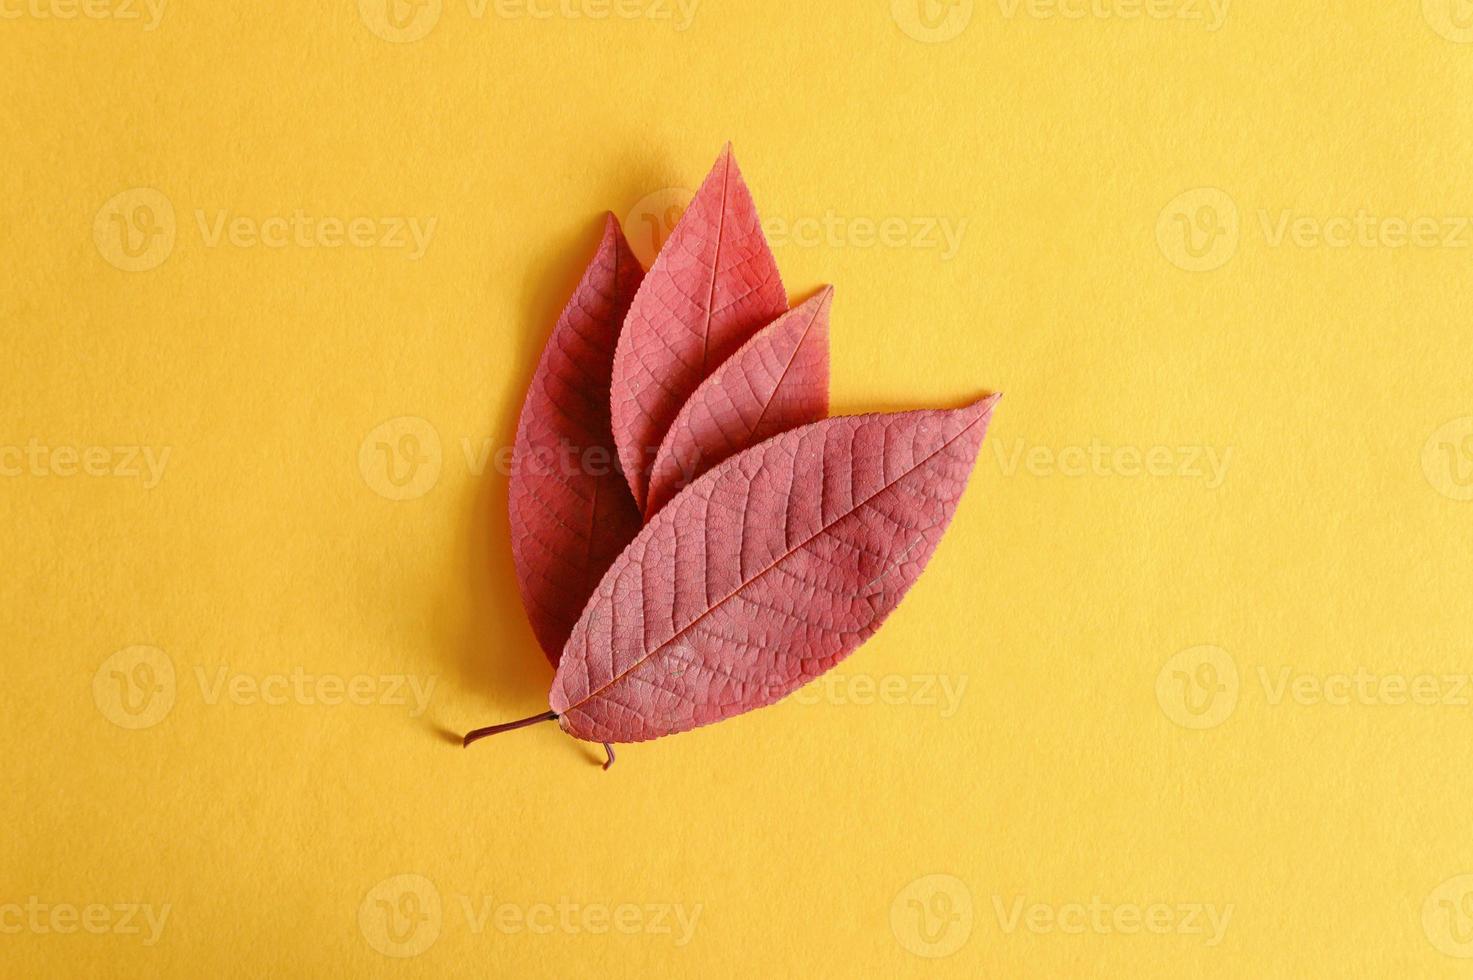 verschillende rode gevallen kersen herfstbladeren op een geel papier achtergrond plat leggen foto